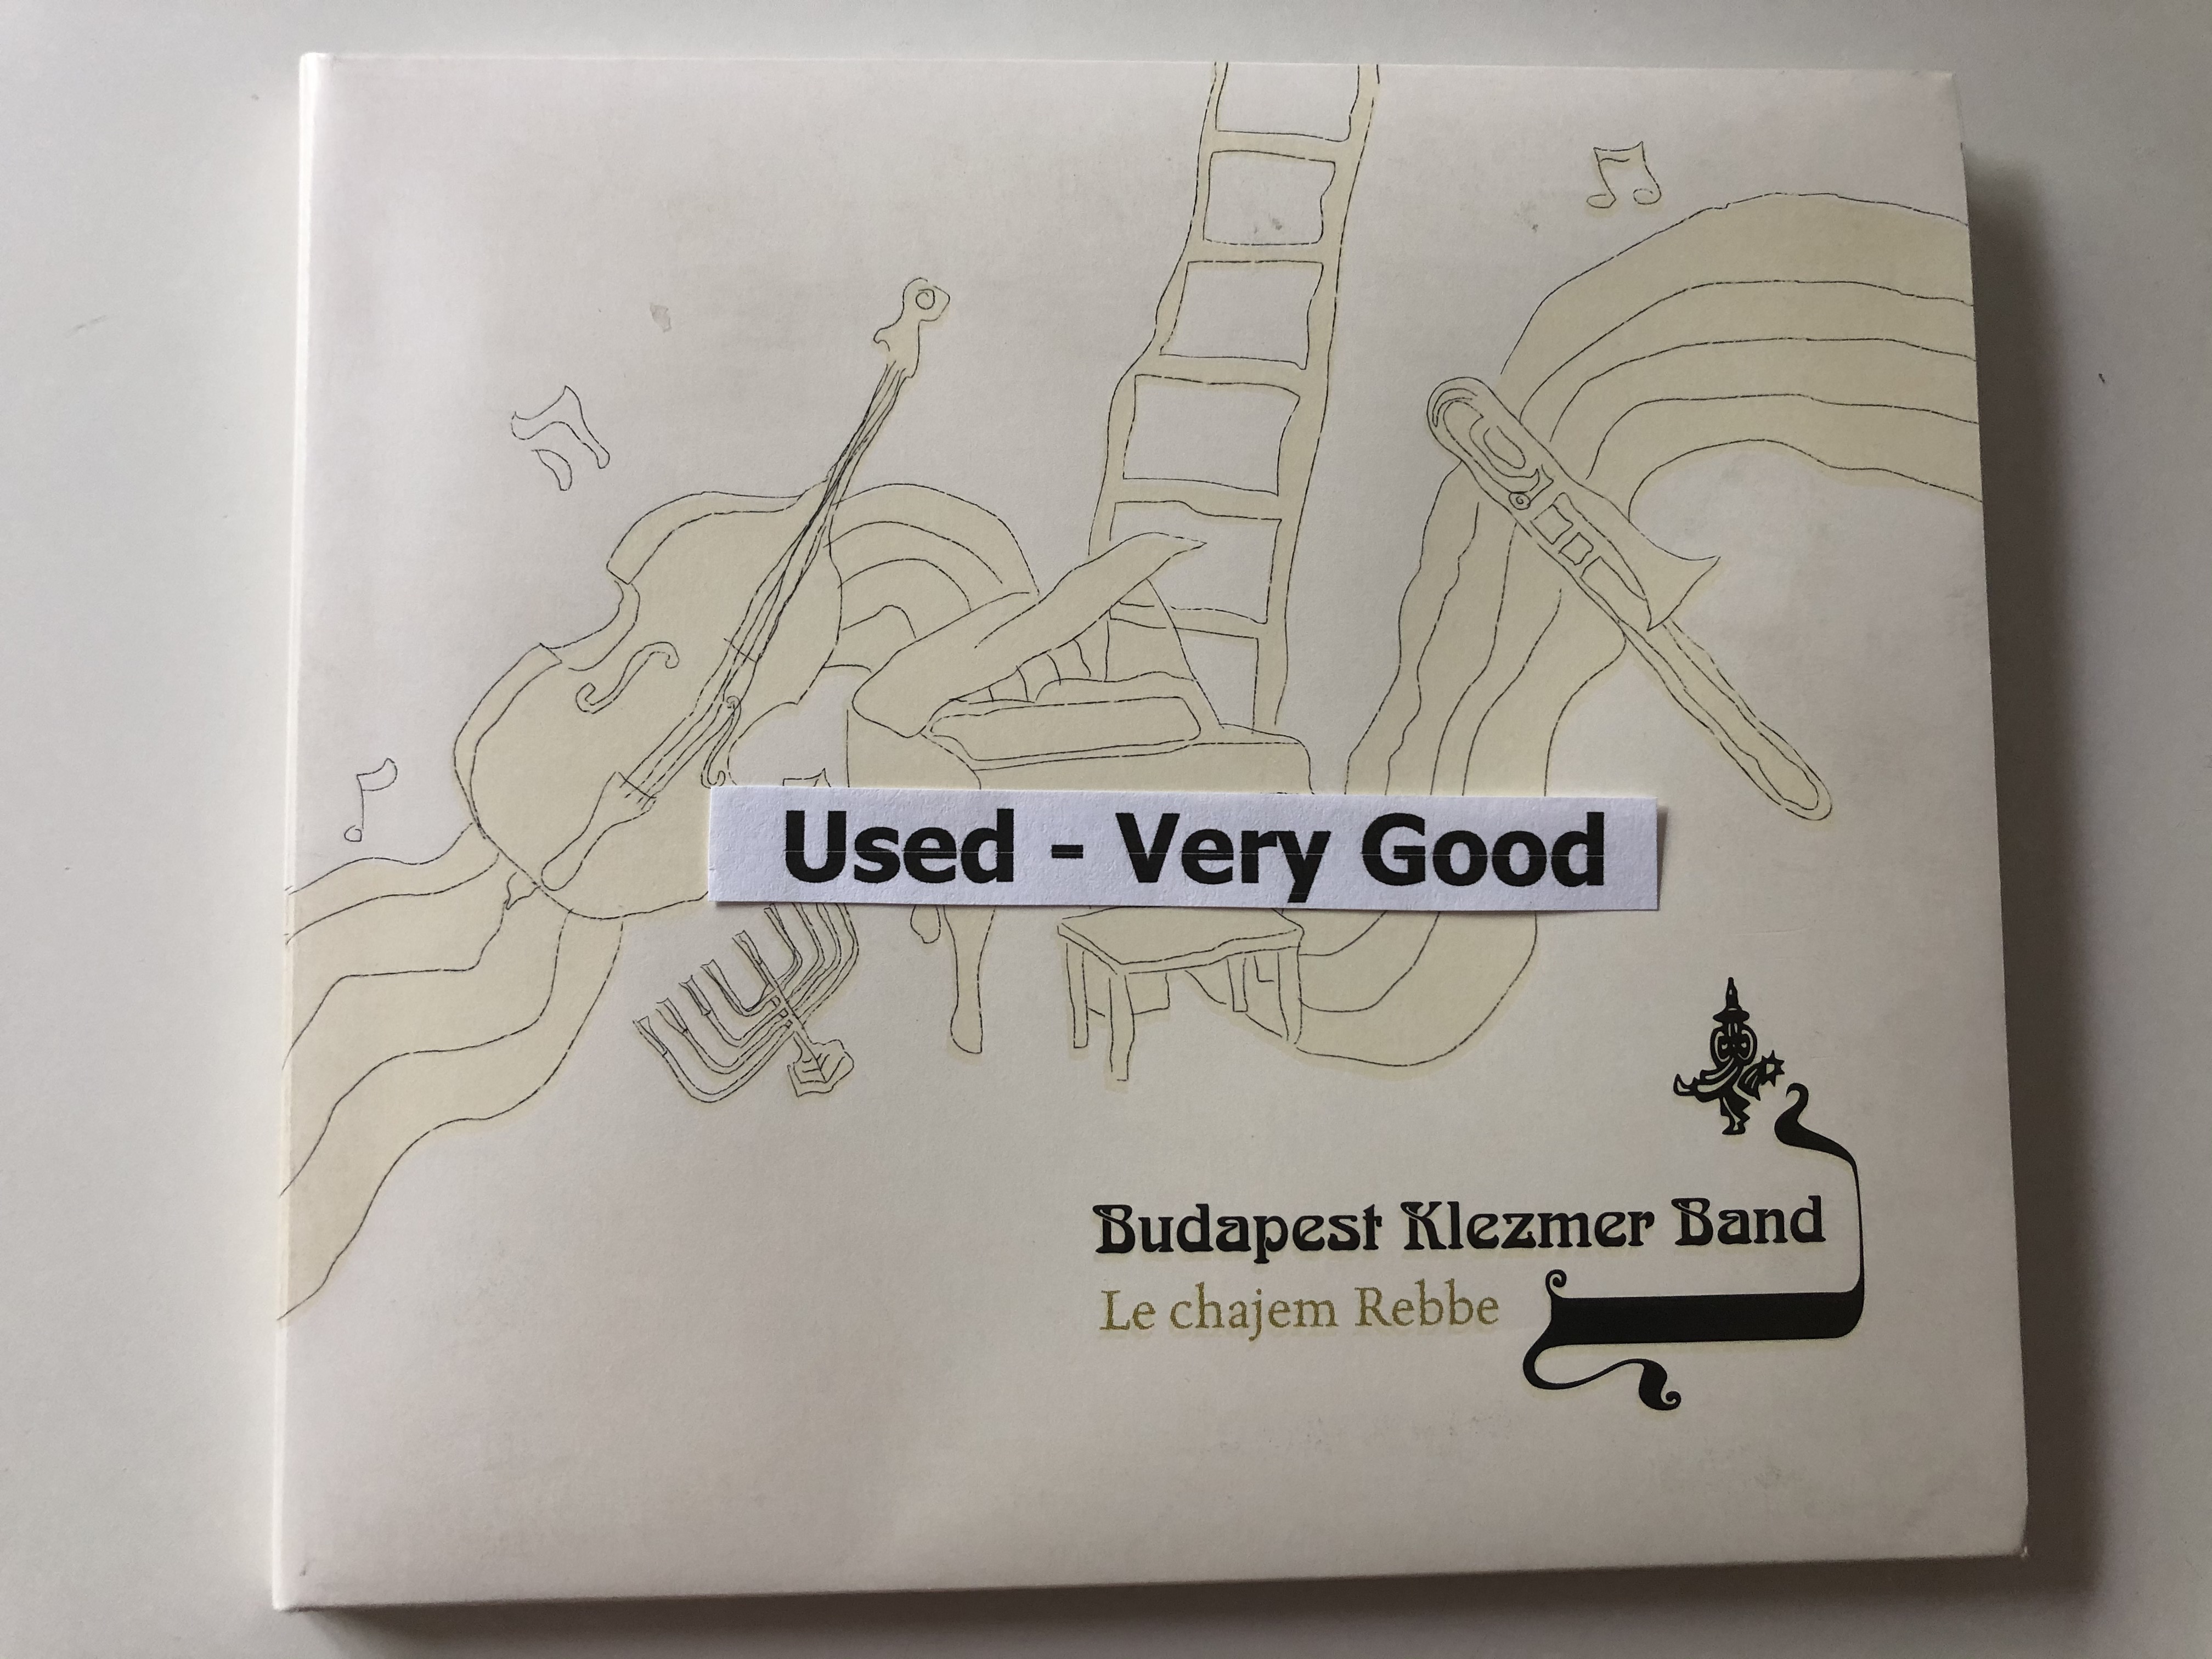 budapest-klezmer-band-le-chajem-rebbe-audio-cd-b68681-2-11-.jpg